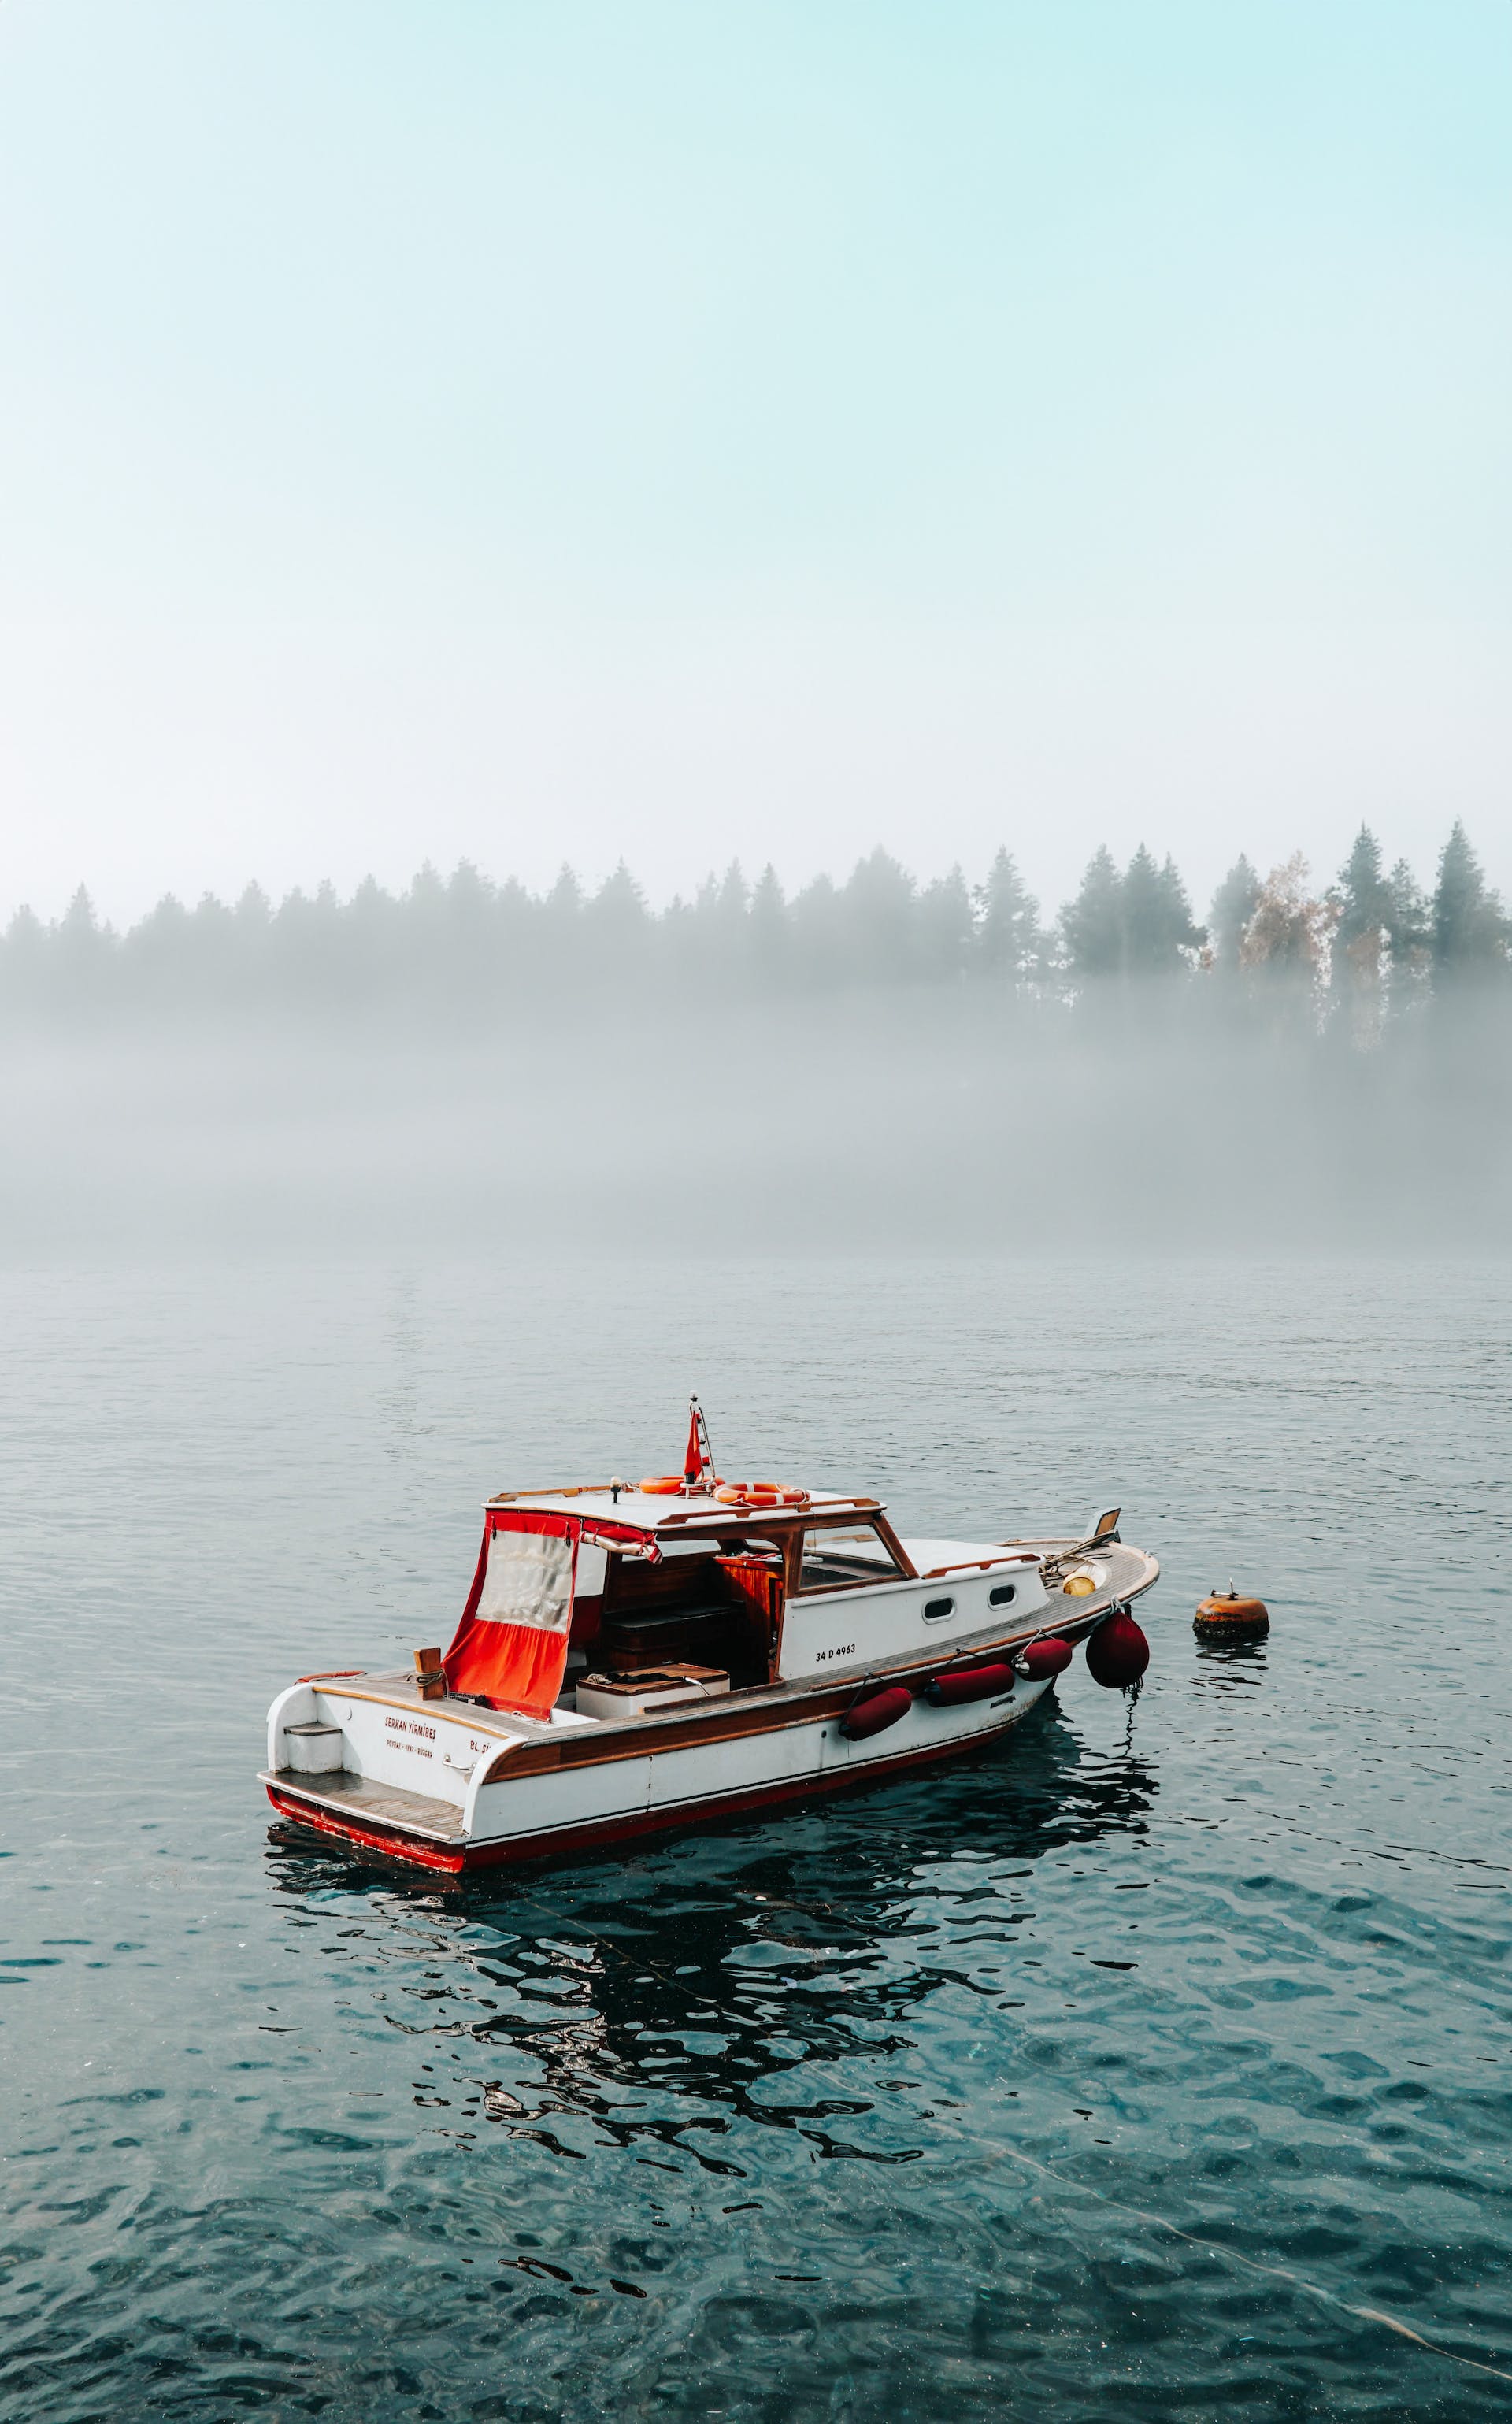 Motorboat on Lake under Fog